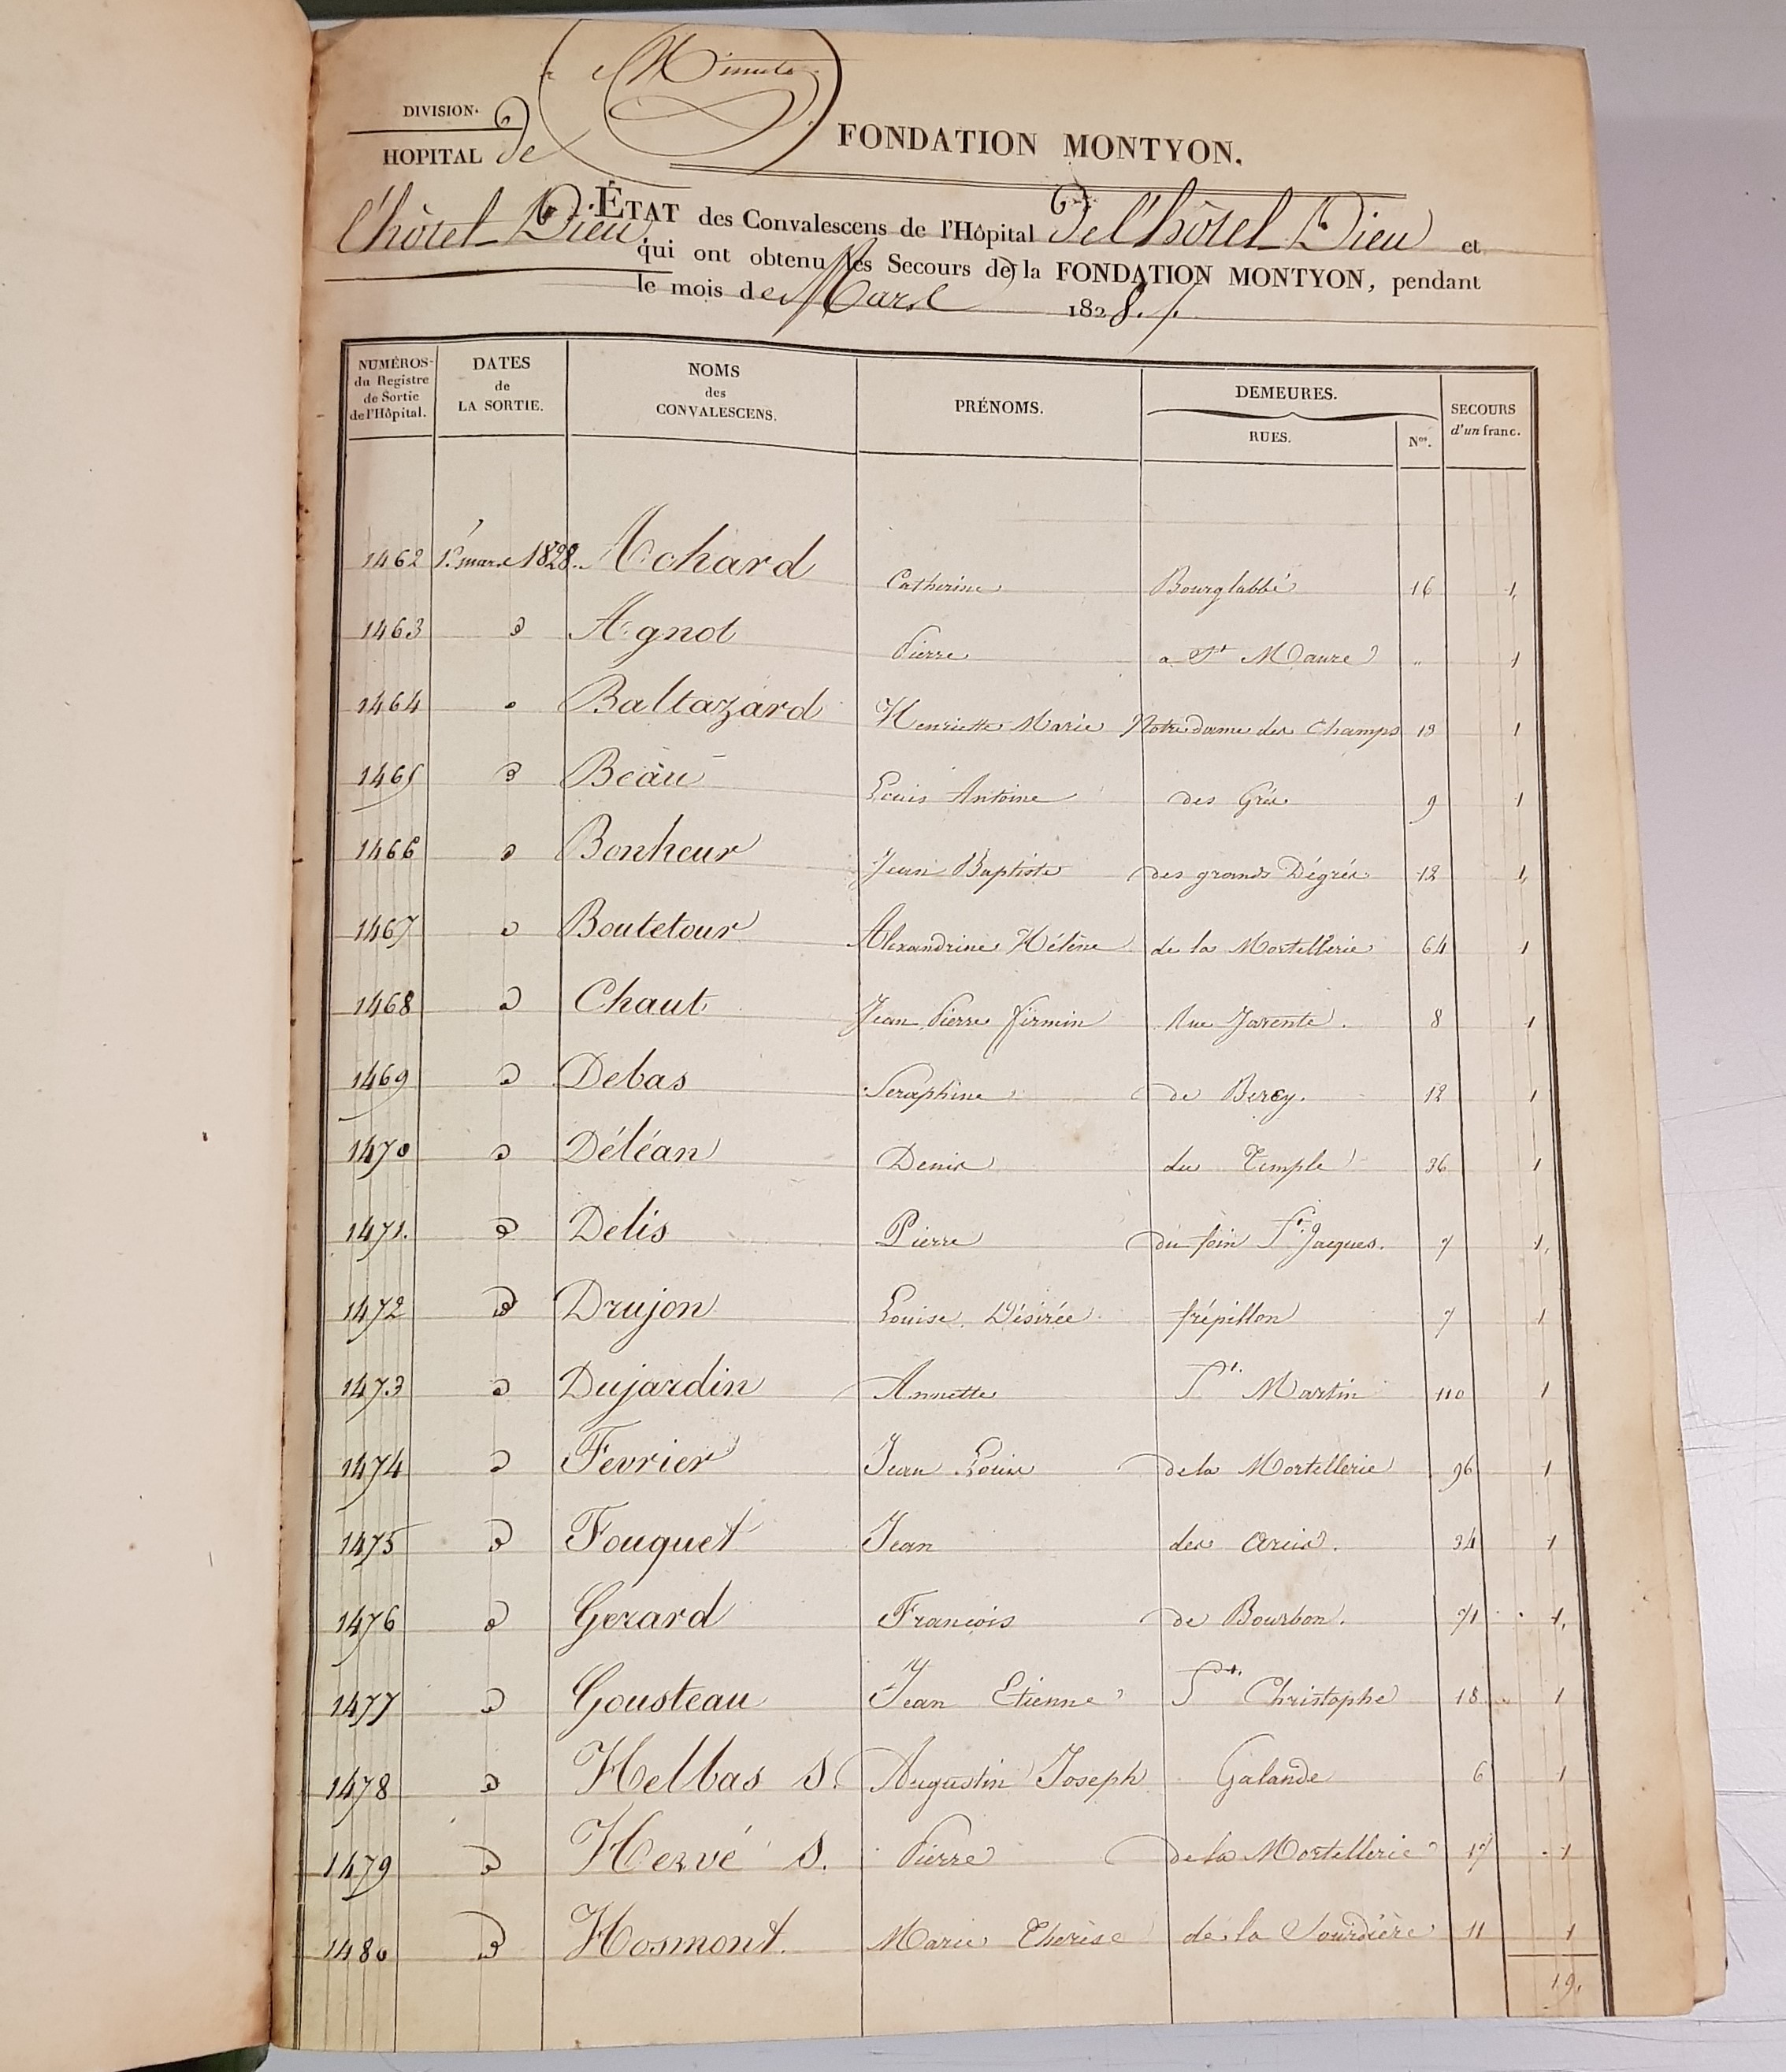 État des convalescents de l’Hôtel-Dieu qui ont obtenu un secours de la fondation Montyon, mars 1828 (Archives AP-HP, 101FOSS/62).